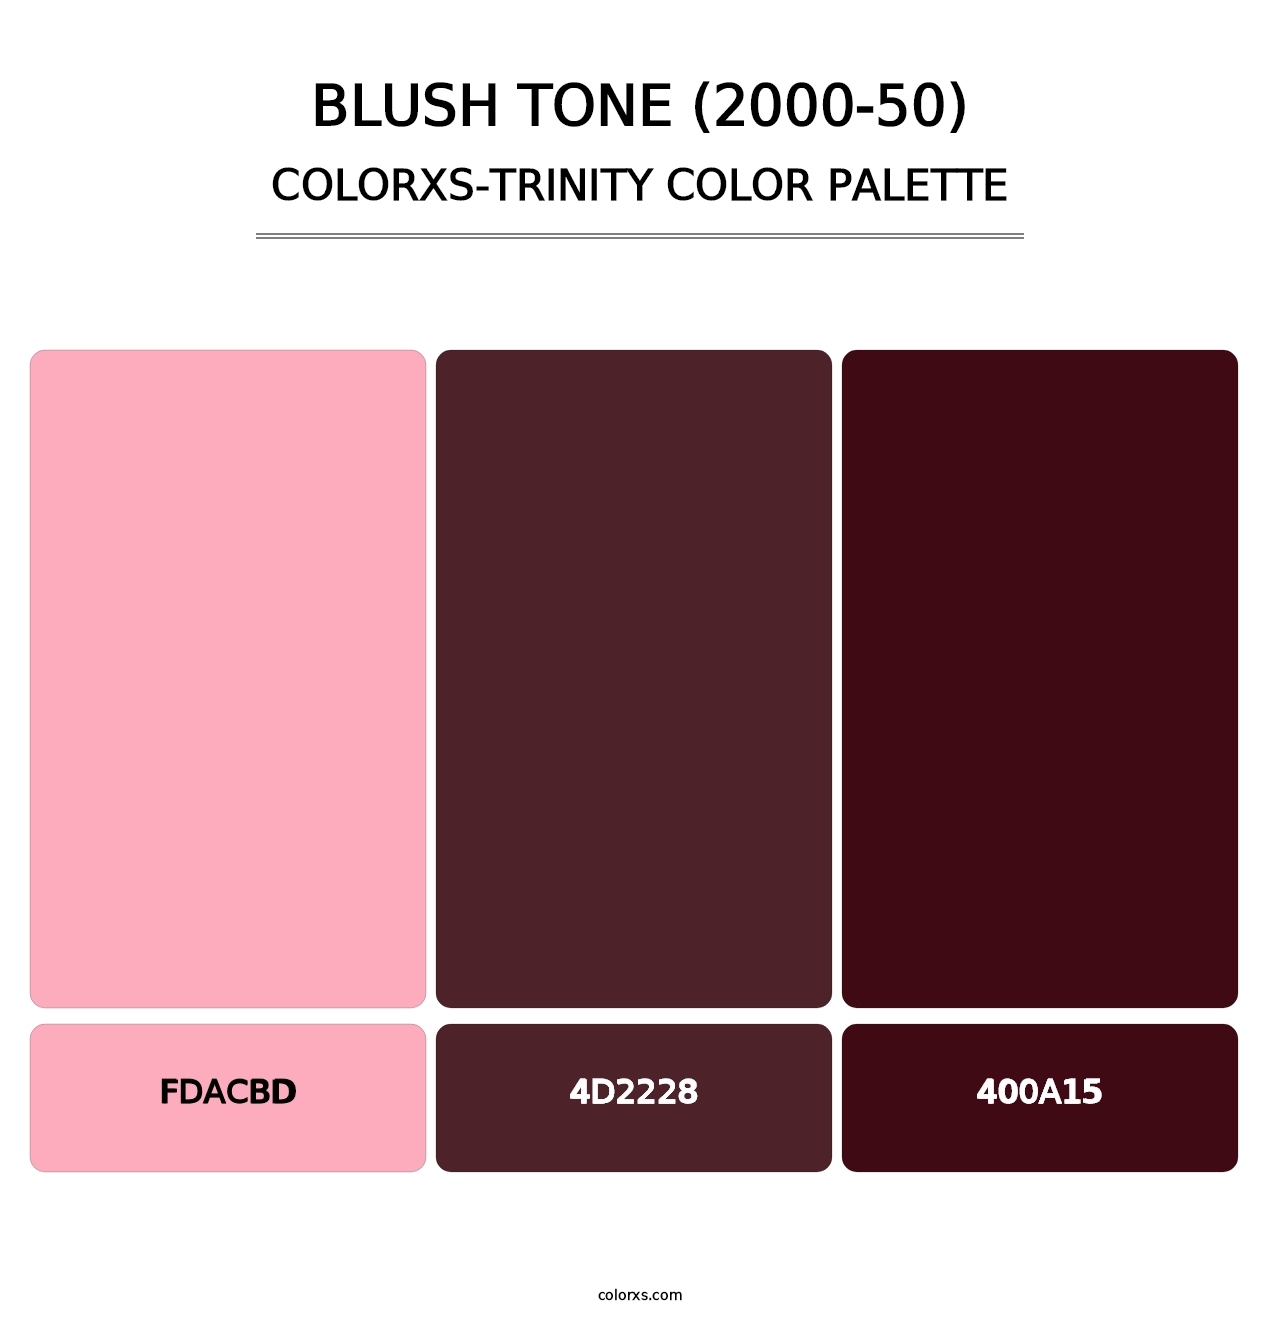 Blush Tone (2000-50) - Colorxs Trinity Palette